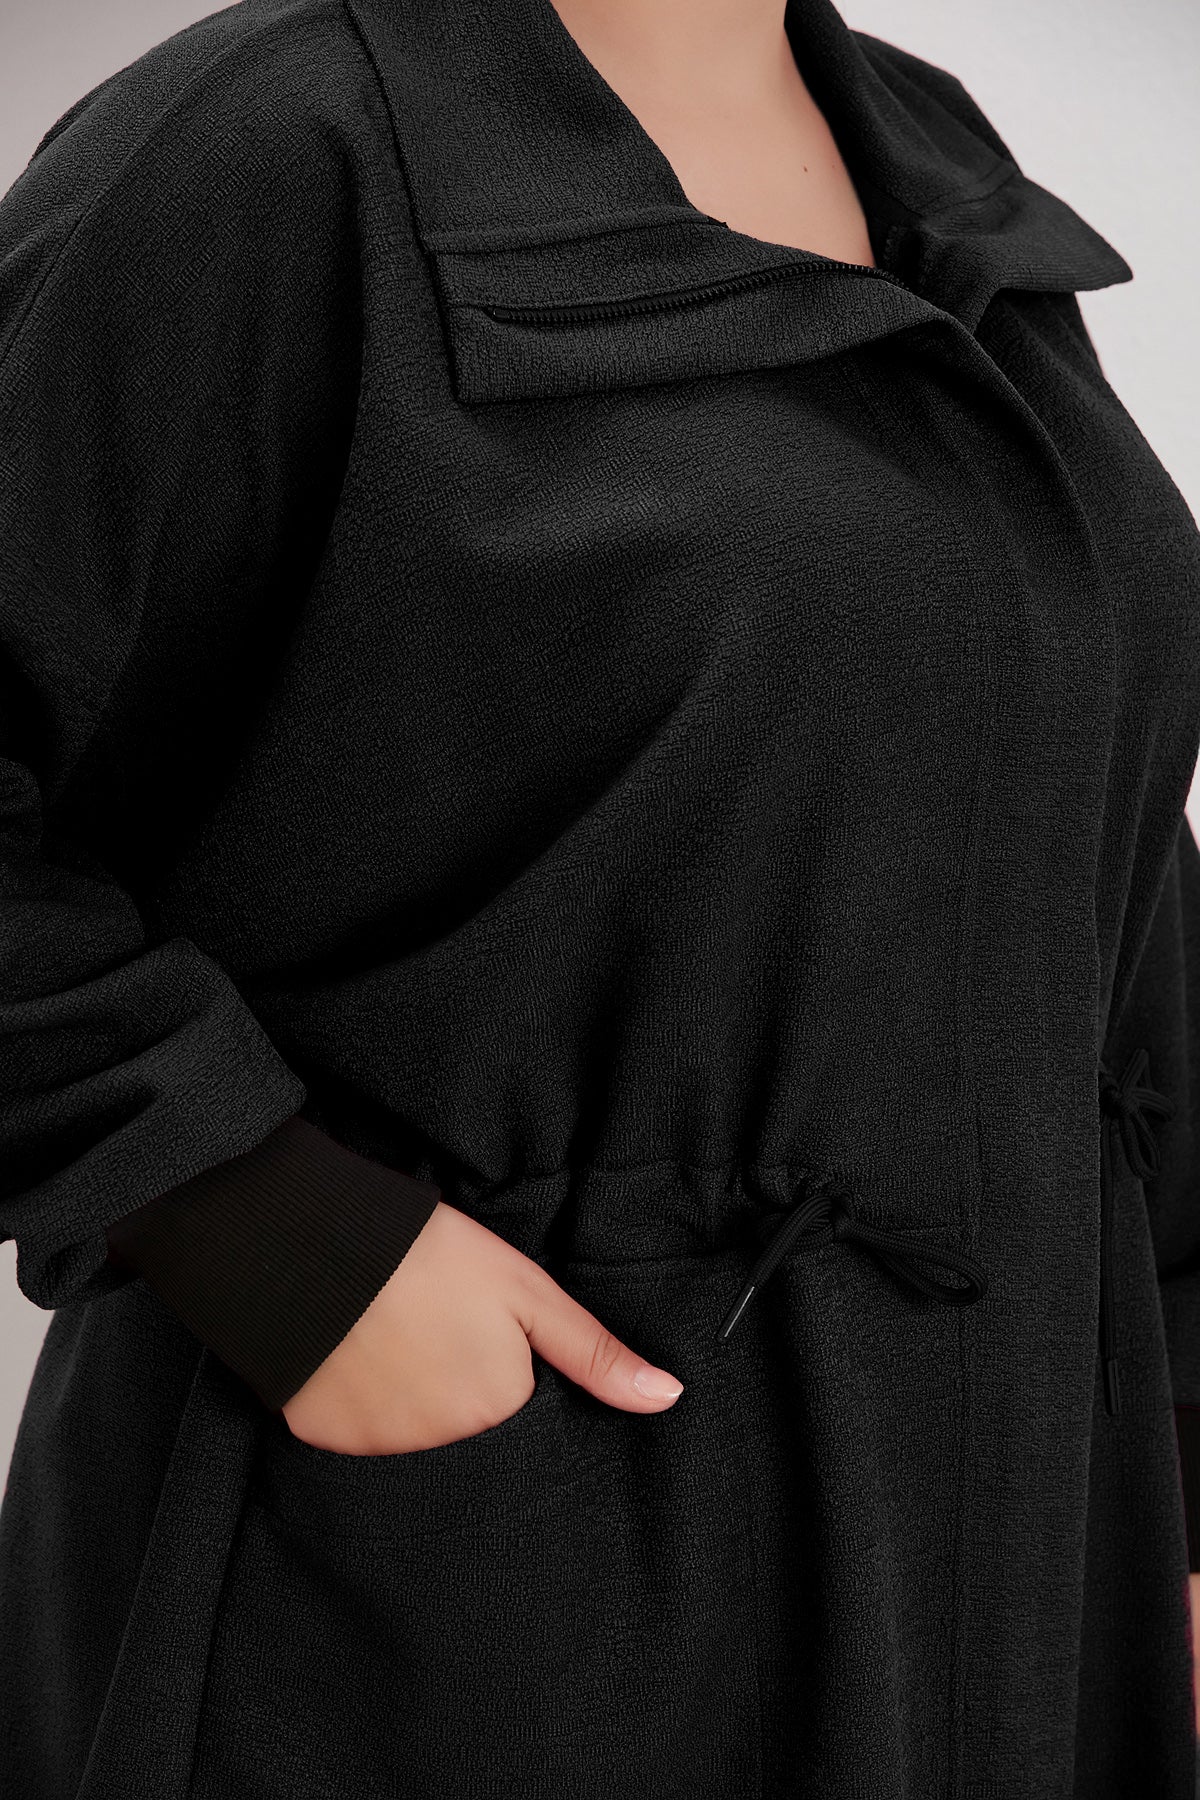 Γυναικείο μπουφάν από μπουκλέ σε μεγάλα μεγέθη -Μαύρο